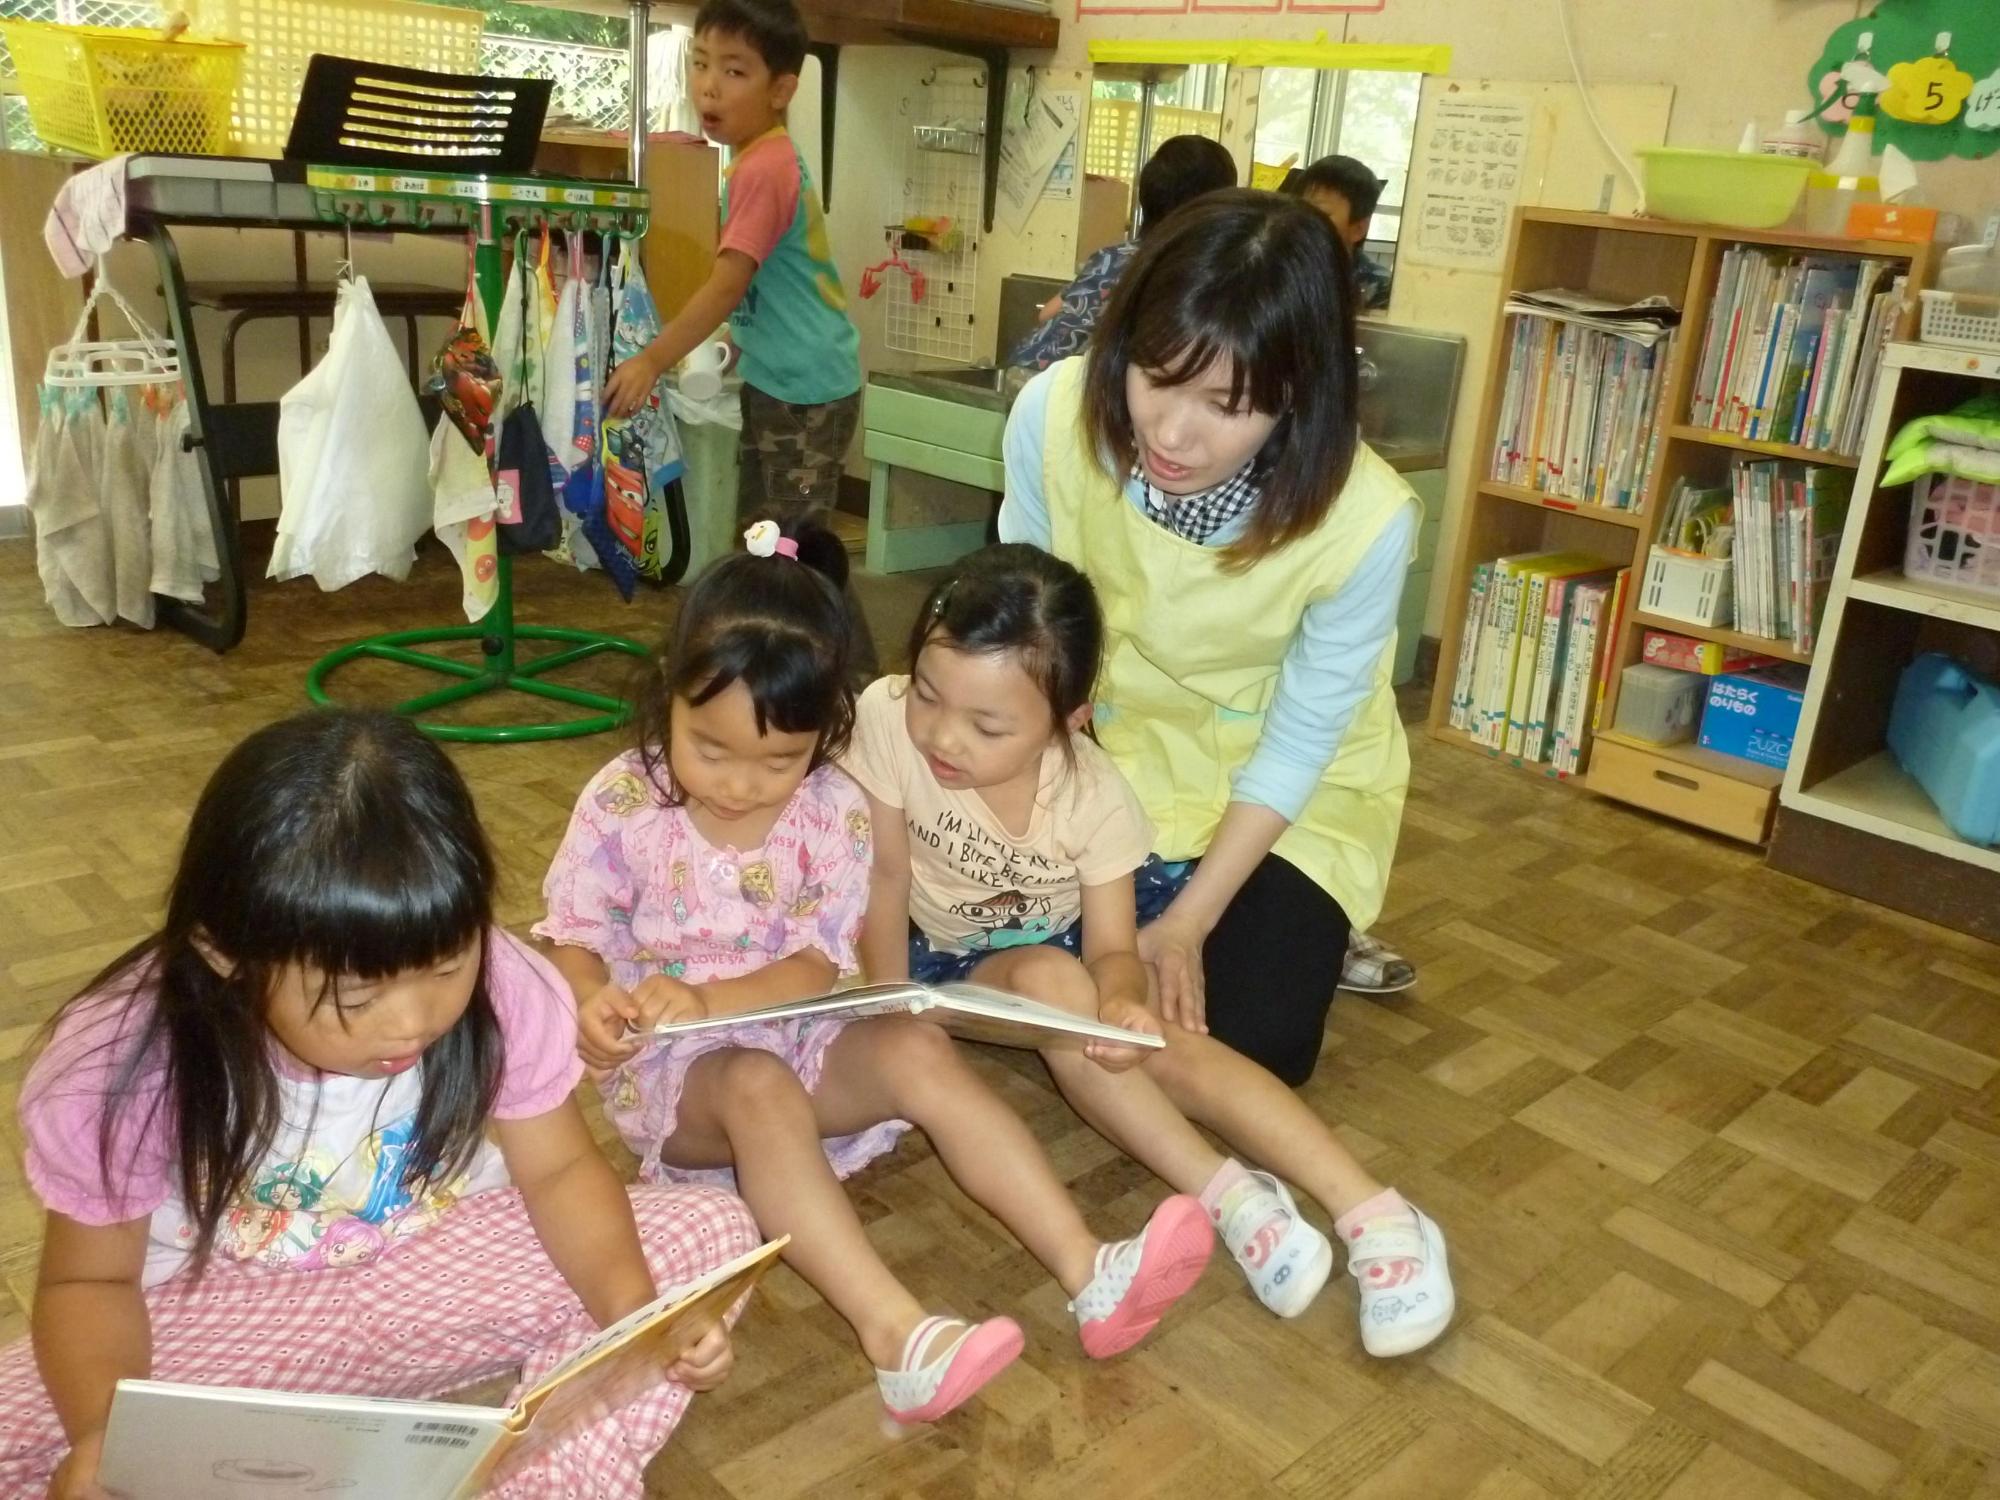 保育園の教室の中で一日保育士体験のお母さんと三人の女児が絵本を読んでいる後ろで男児がタオルで手を拭いている写真